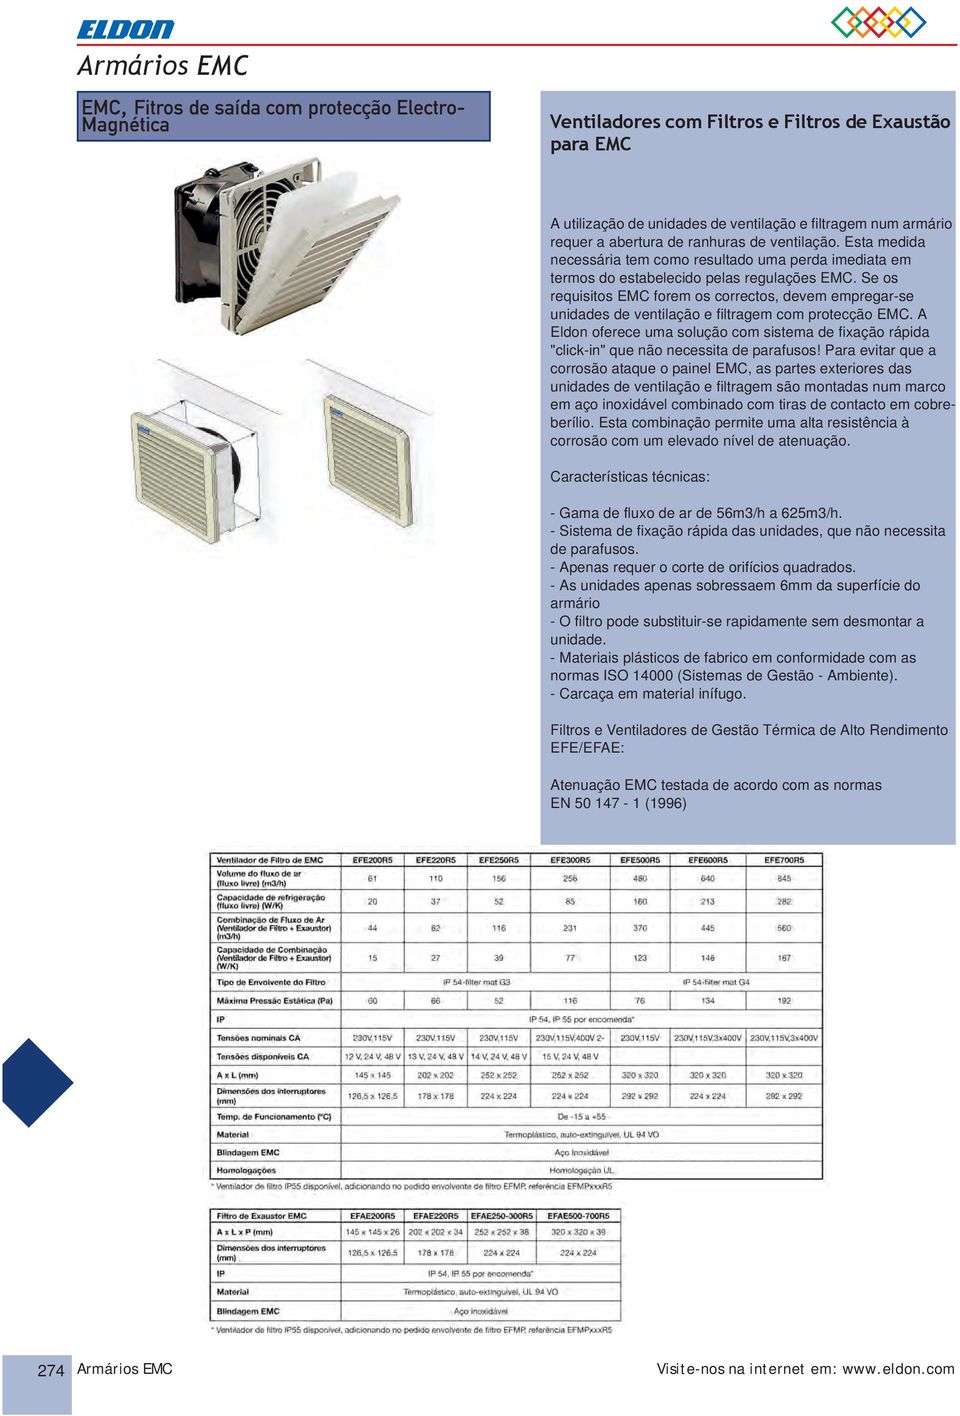 Se os requisitos EMC forem os correctos, devem empregar-se unidades de ventilação e filtragem com protecção EMC.